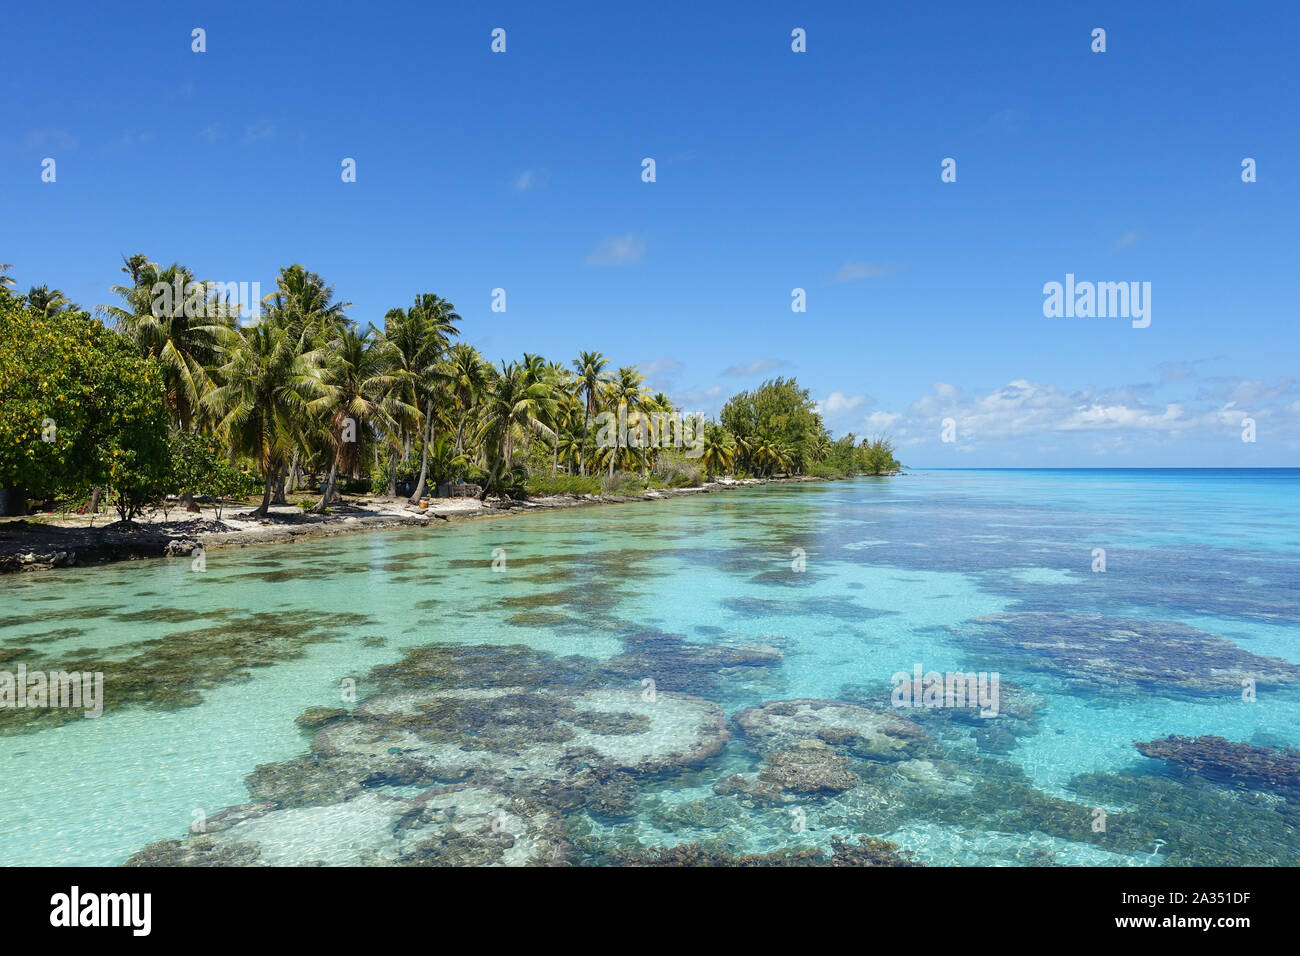 Palme la linea di una spiaggia di sabbia vicino a una laguna tropicale riempito di corallo in un luminoso cielo blu Foto Stock